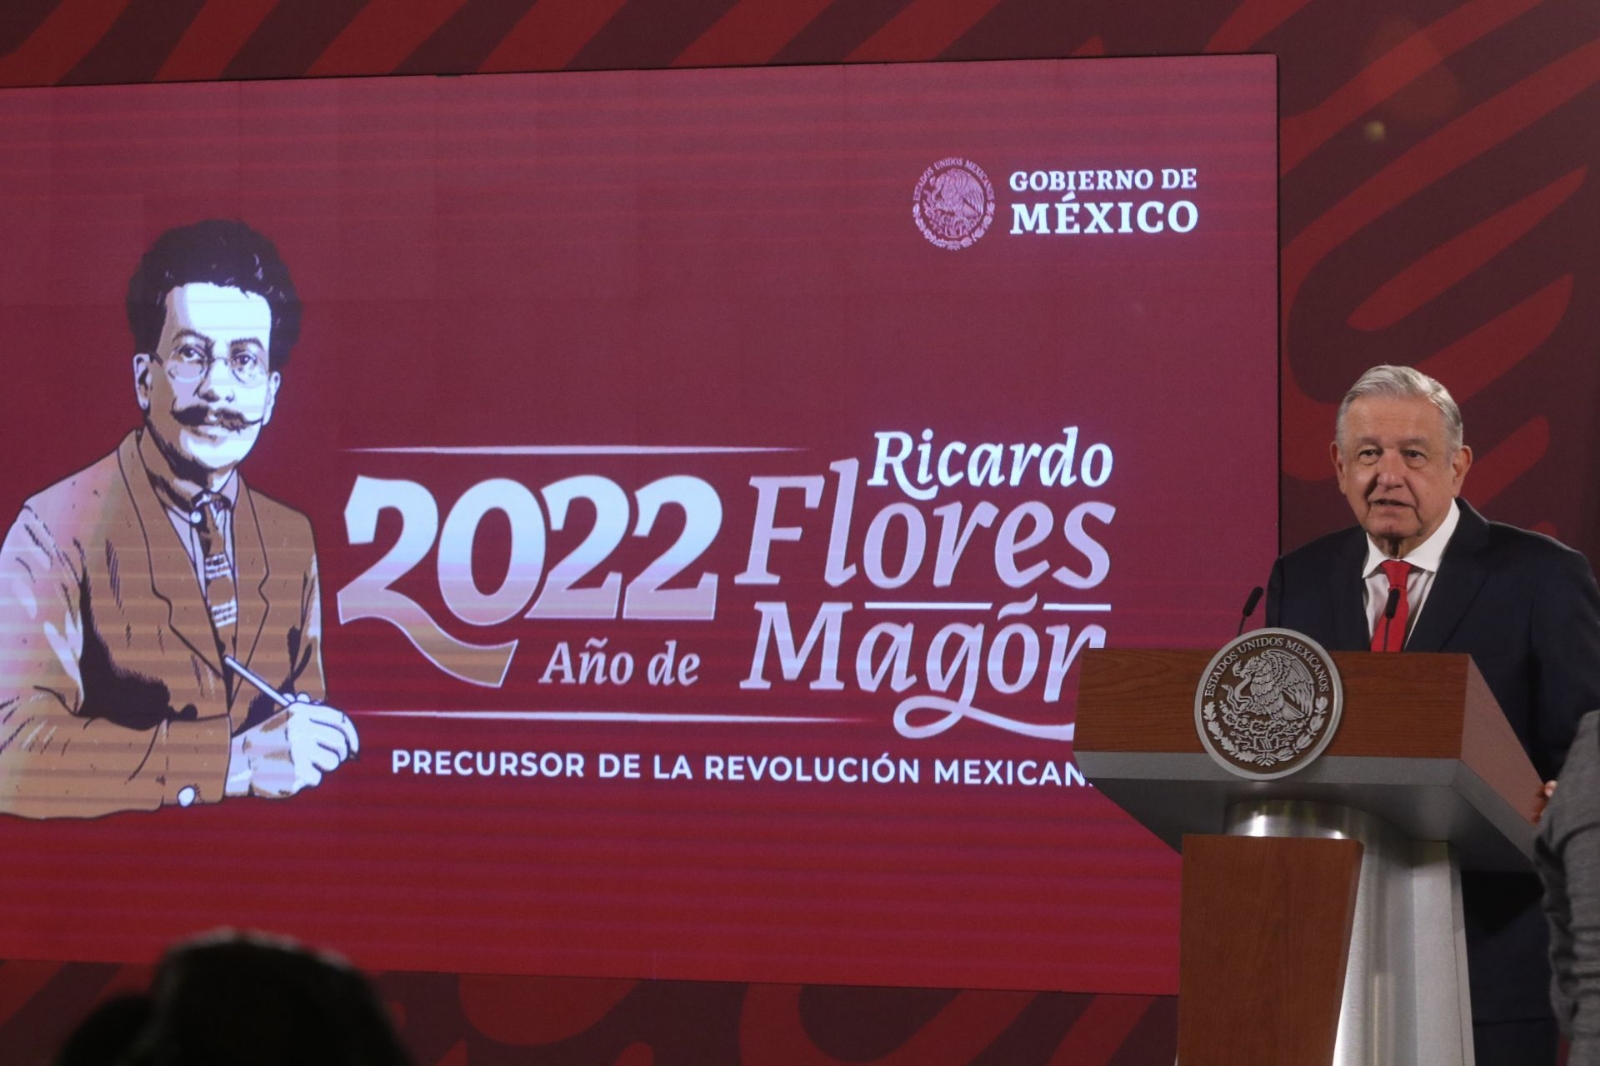 AMLO presenta imagen oficial del año dedicado a Ricardo Flores Magón